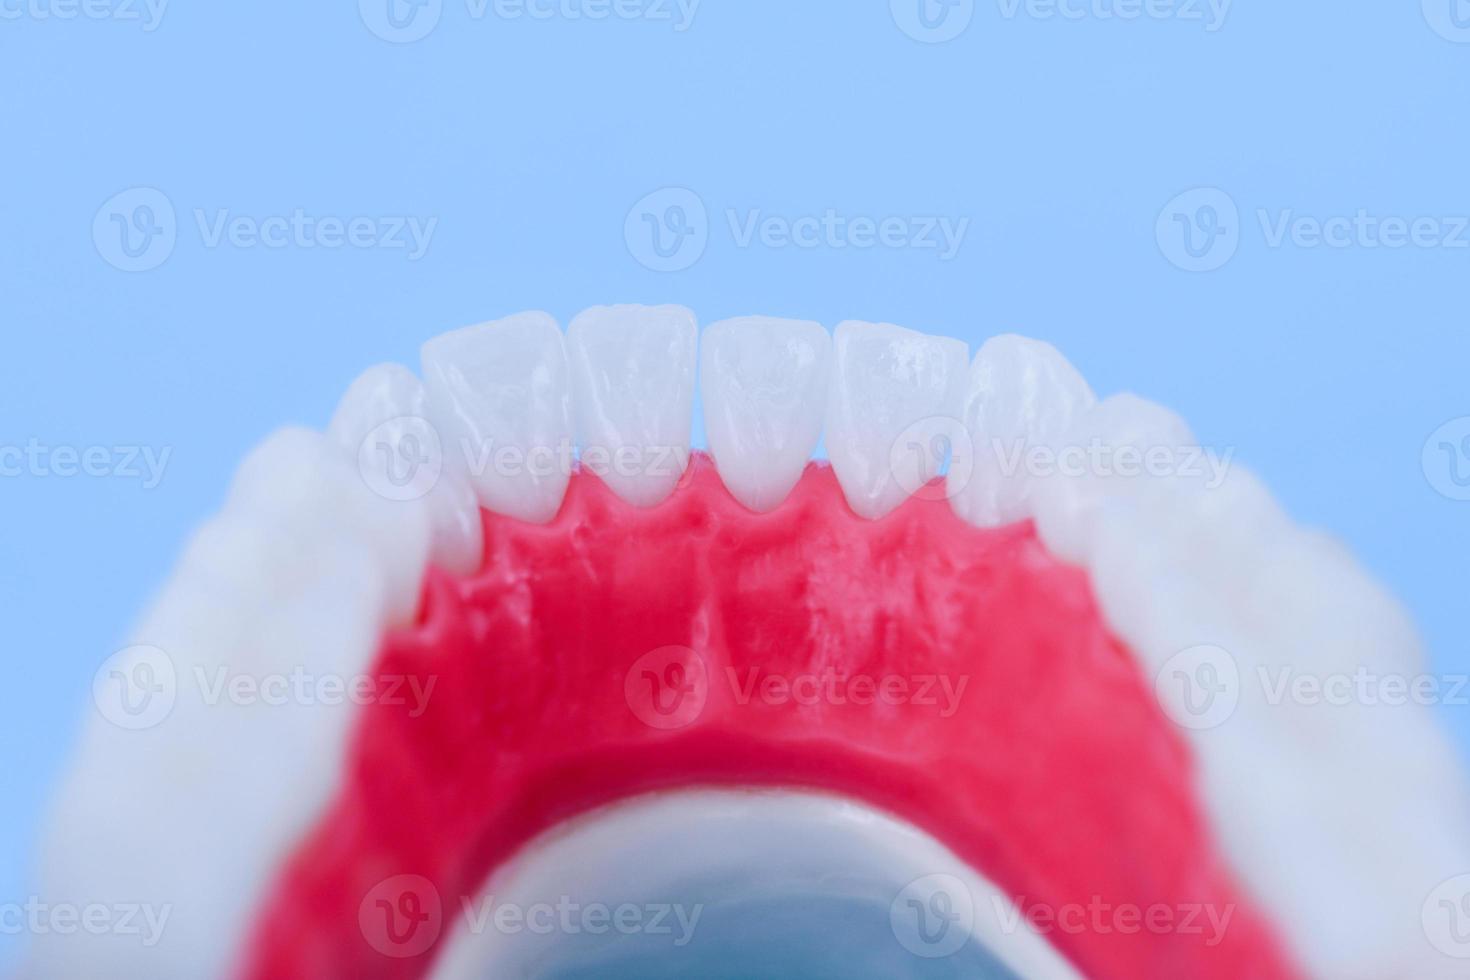 mandíbula humana inferior com modelo de anatomia de dentes e gengivas foto